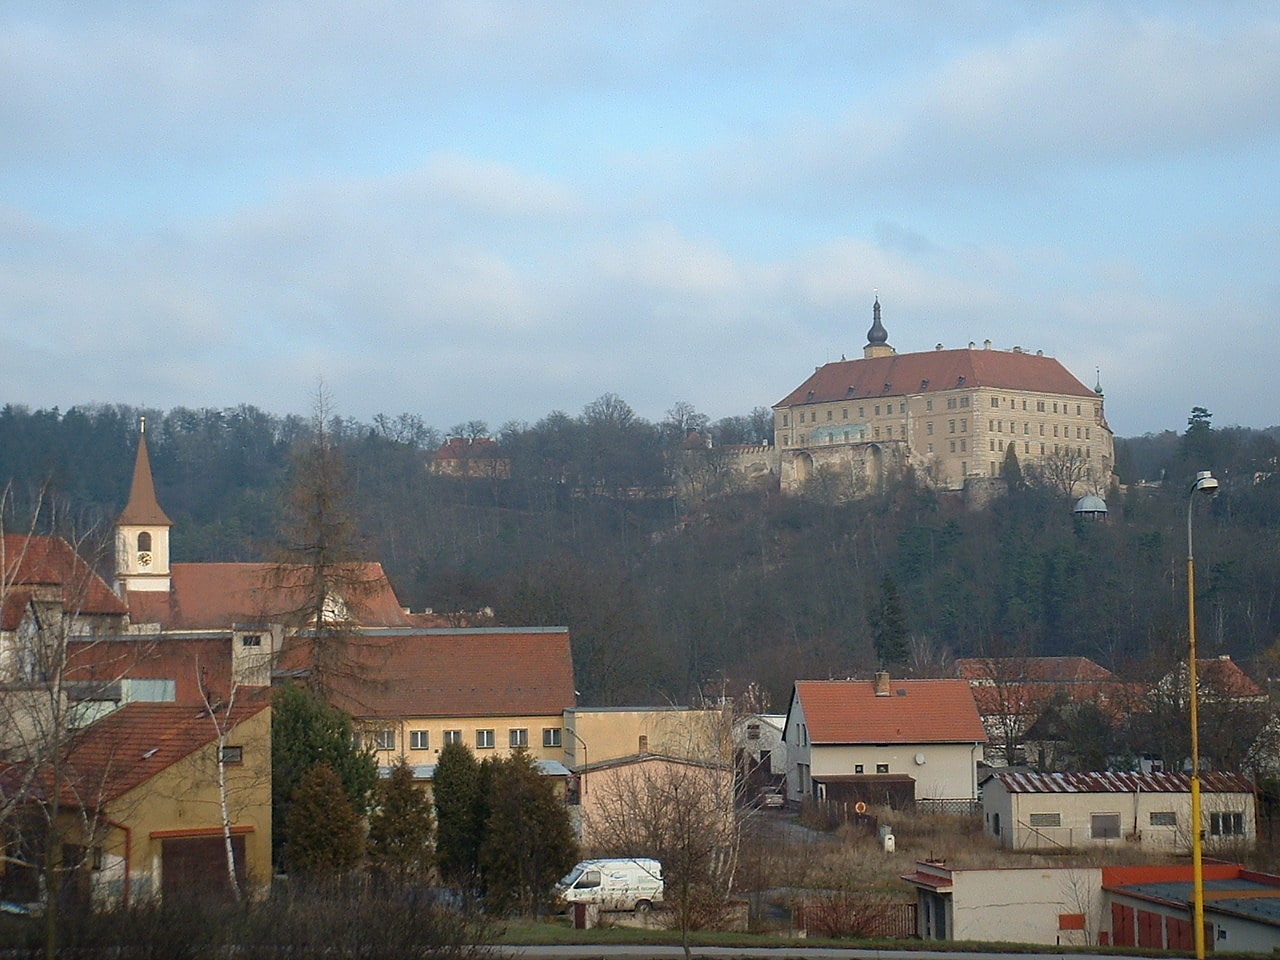 Náměšť nad Oslavou, Czech Republic